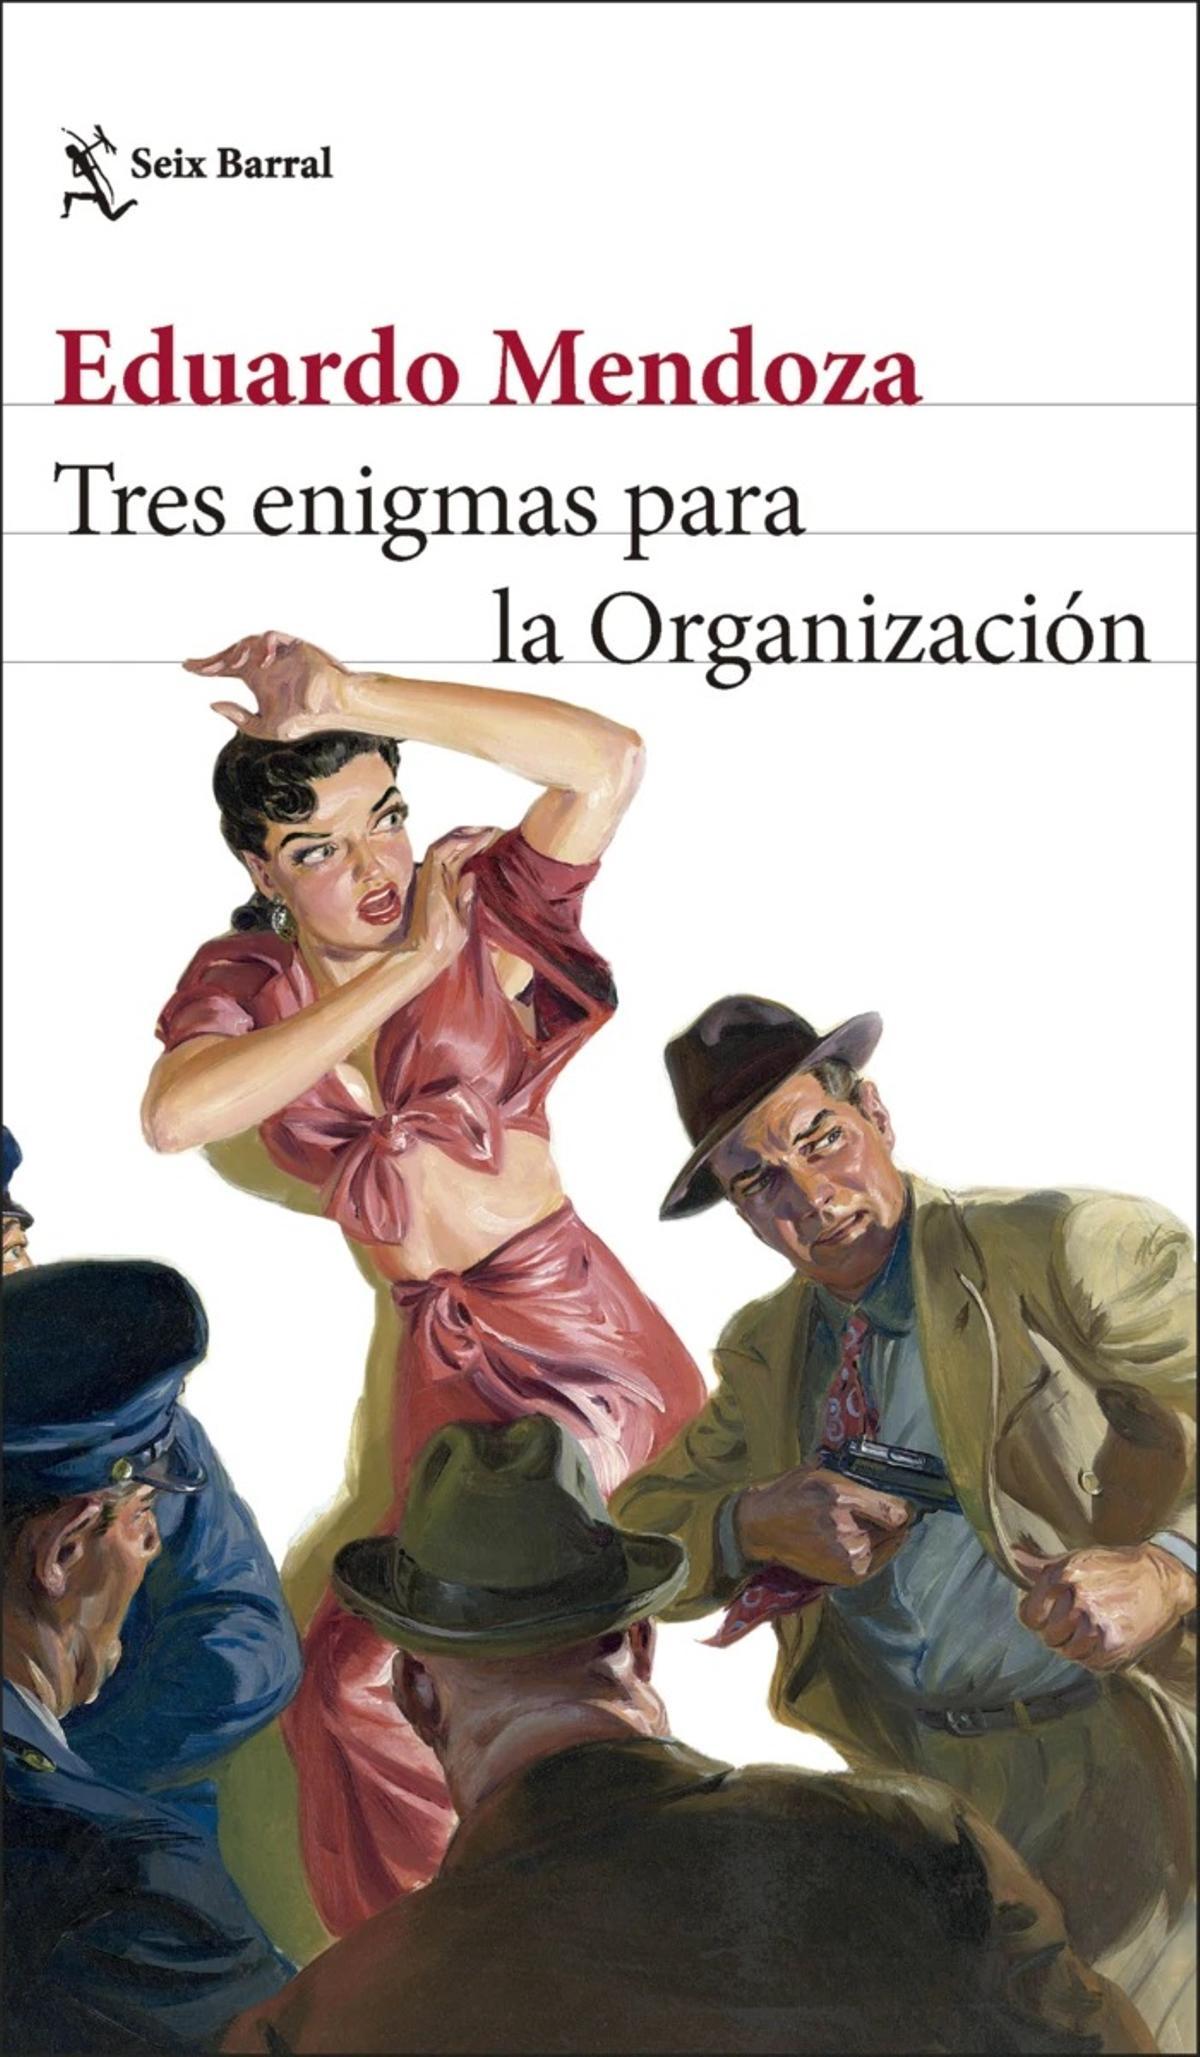 Portada de 'Tres enigmas para la Organización', de Eduardo Mendoza.